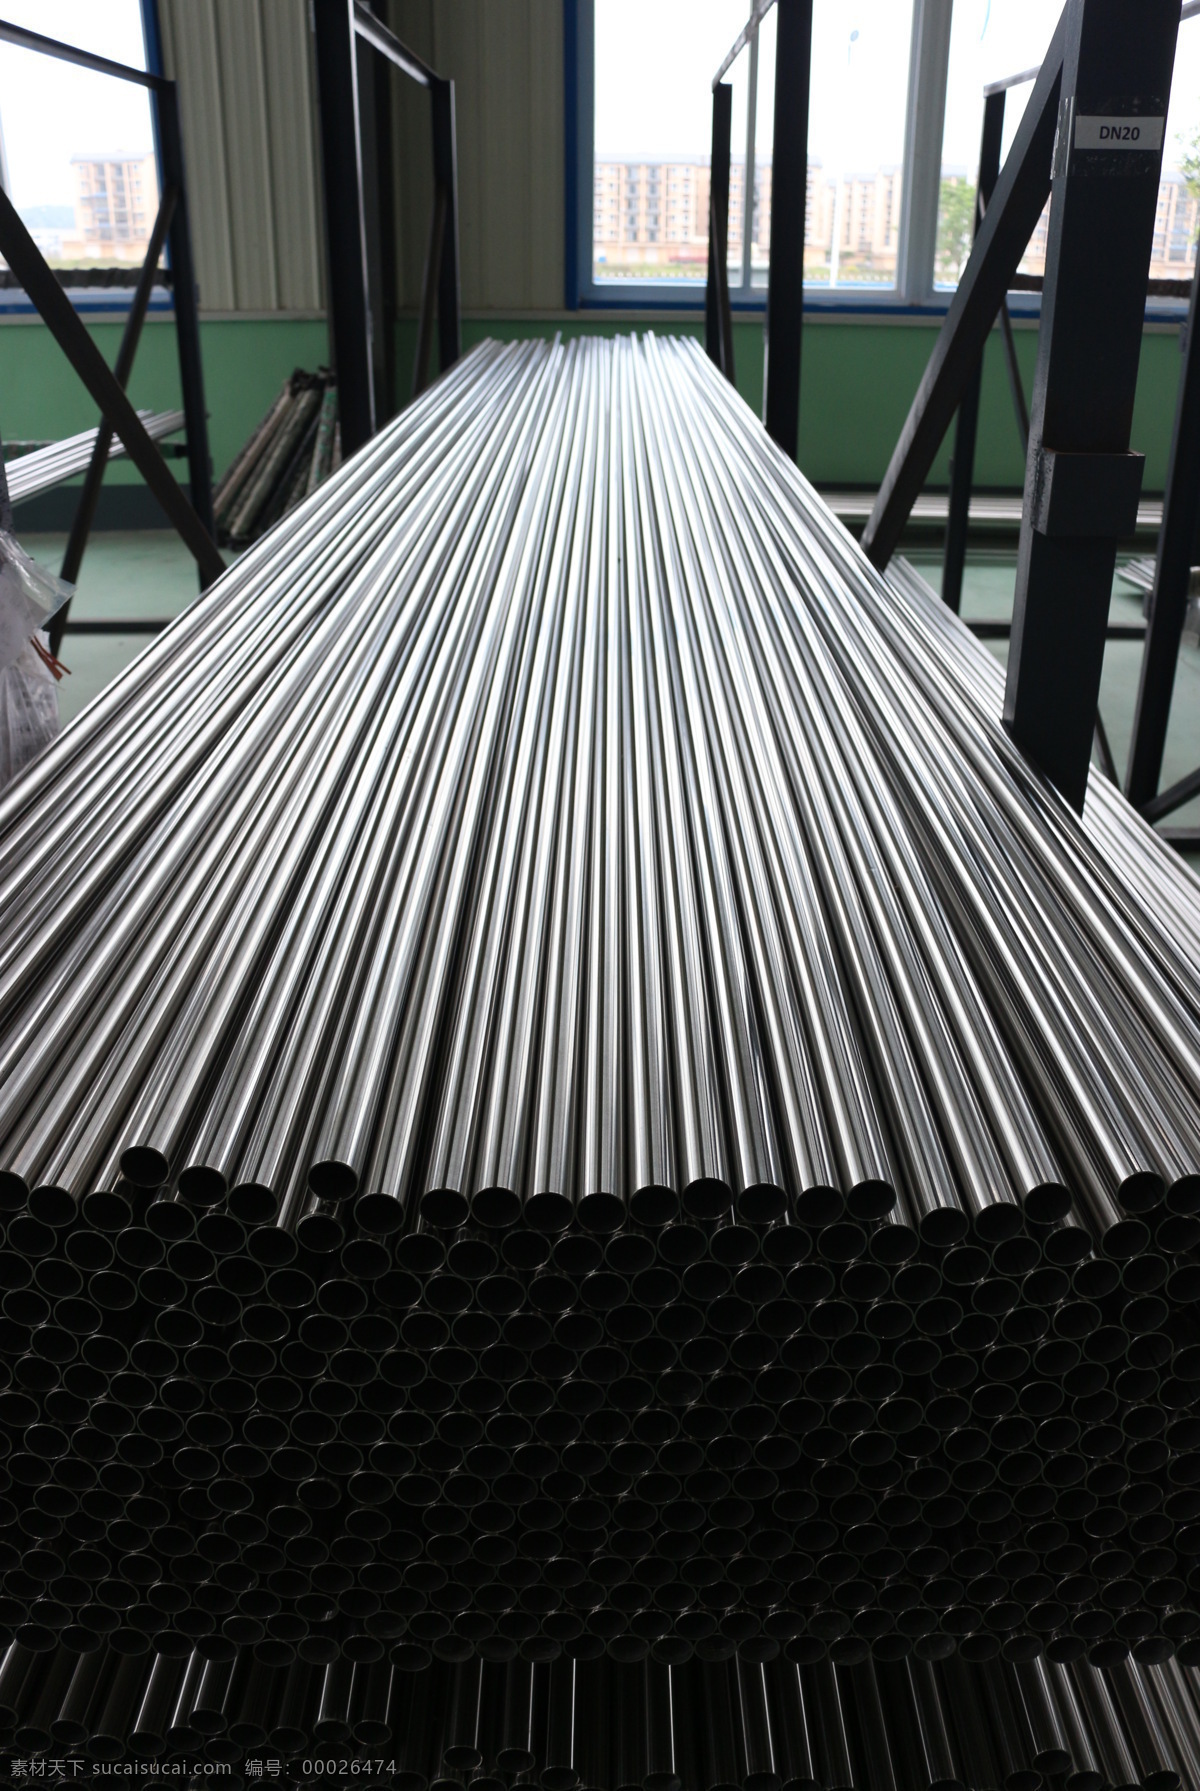 不锈钢管材 不锈钢 管材 企业生产 公司产品 不锈钢产品 现代科技 工业生产